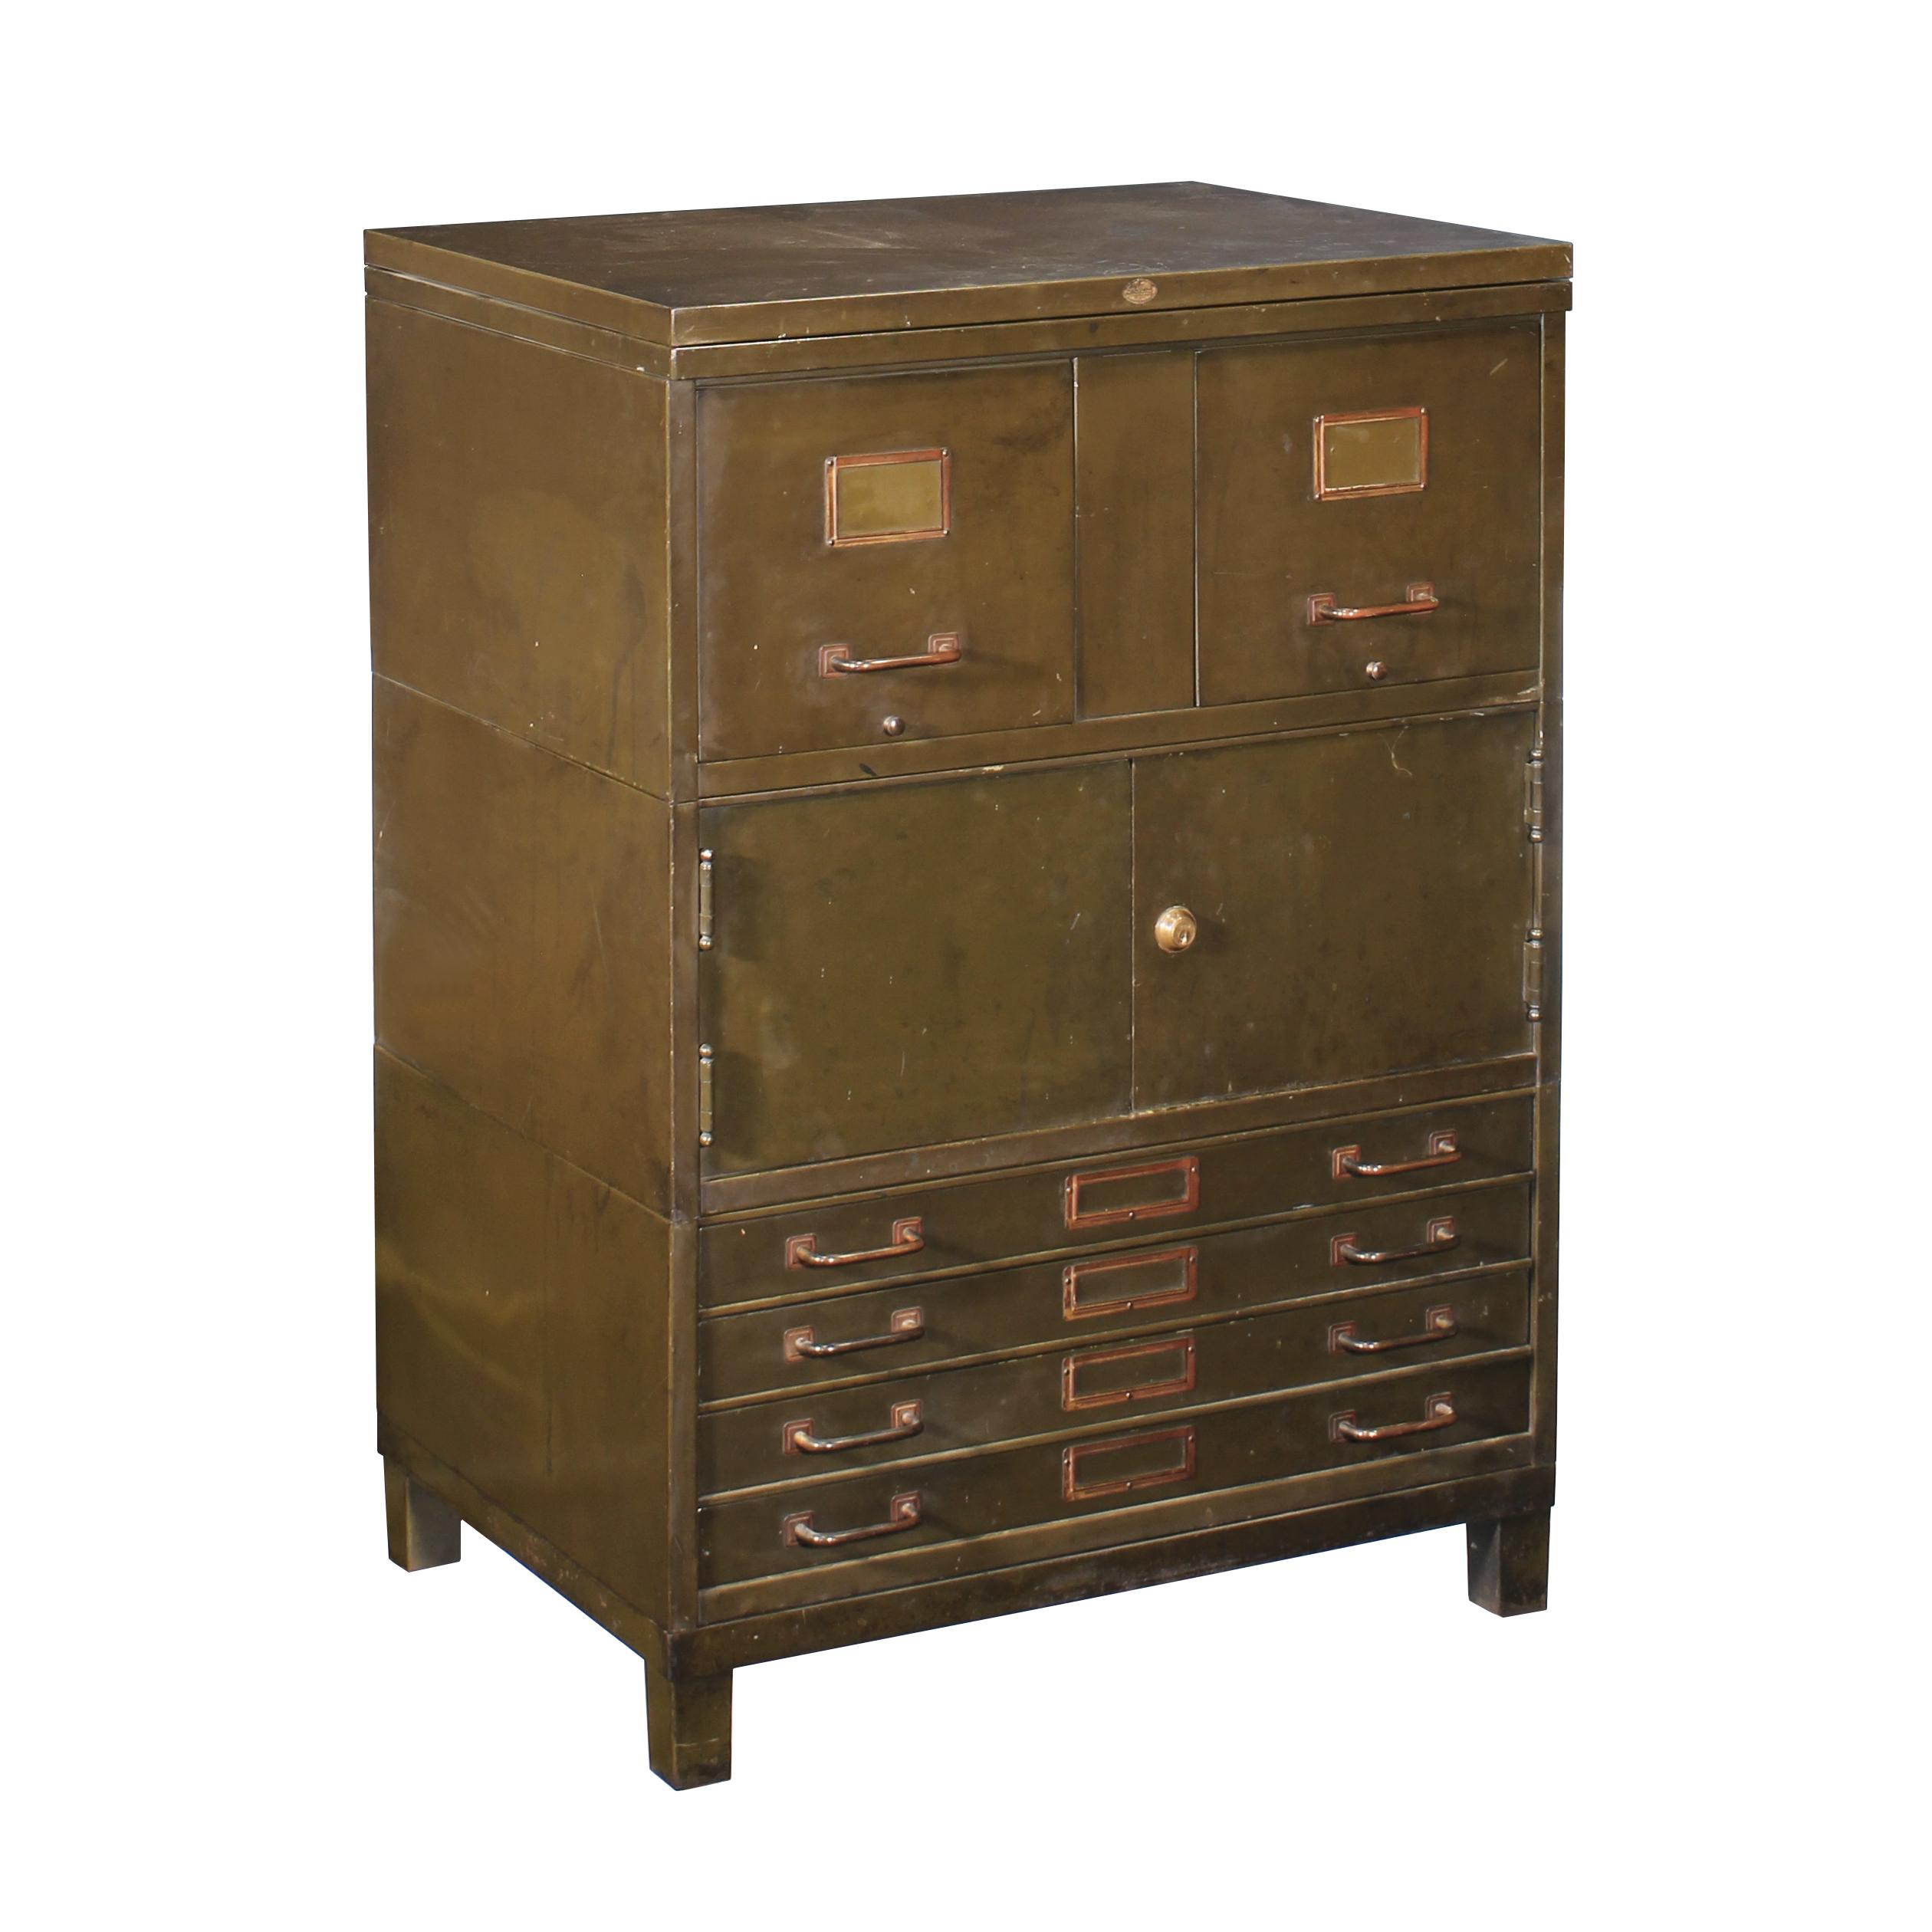 Vintage Industrial Metal Flat File Cabinet regarding dimensions 2520 X 2520